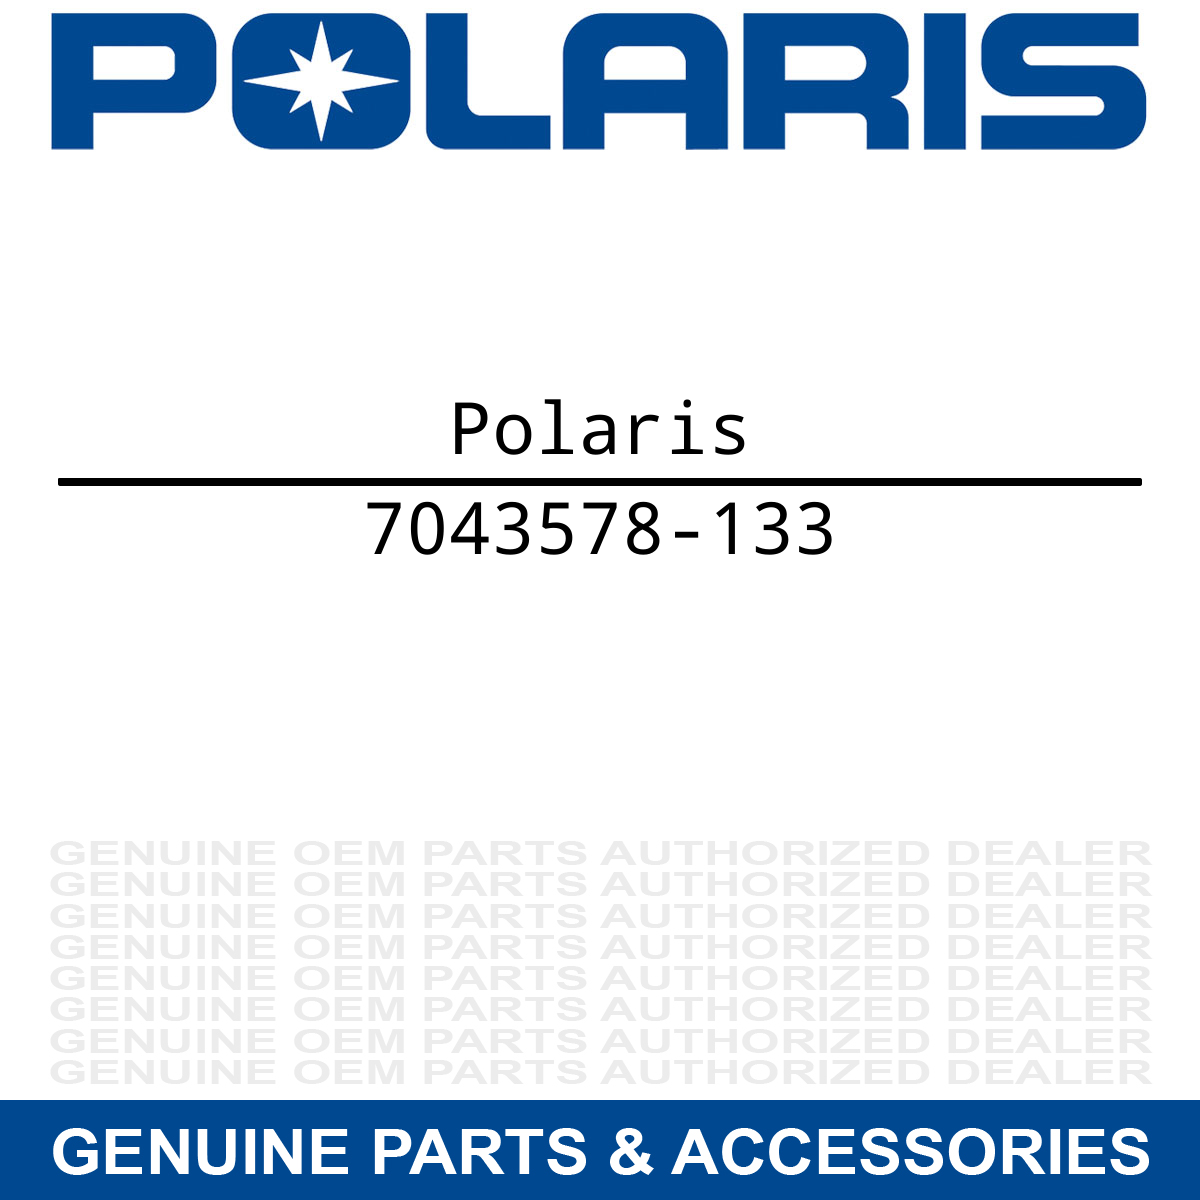 Polaris 7043578-133 Bright White Compression Spring Scrambler 500